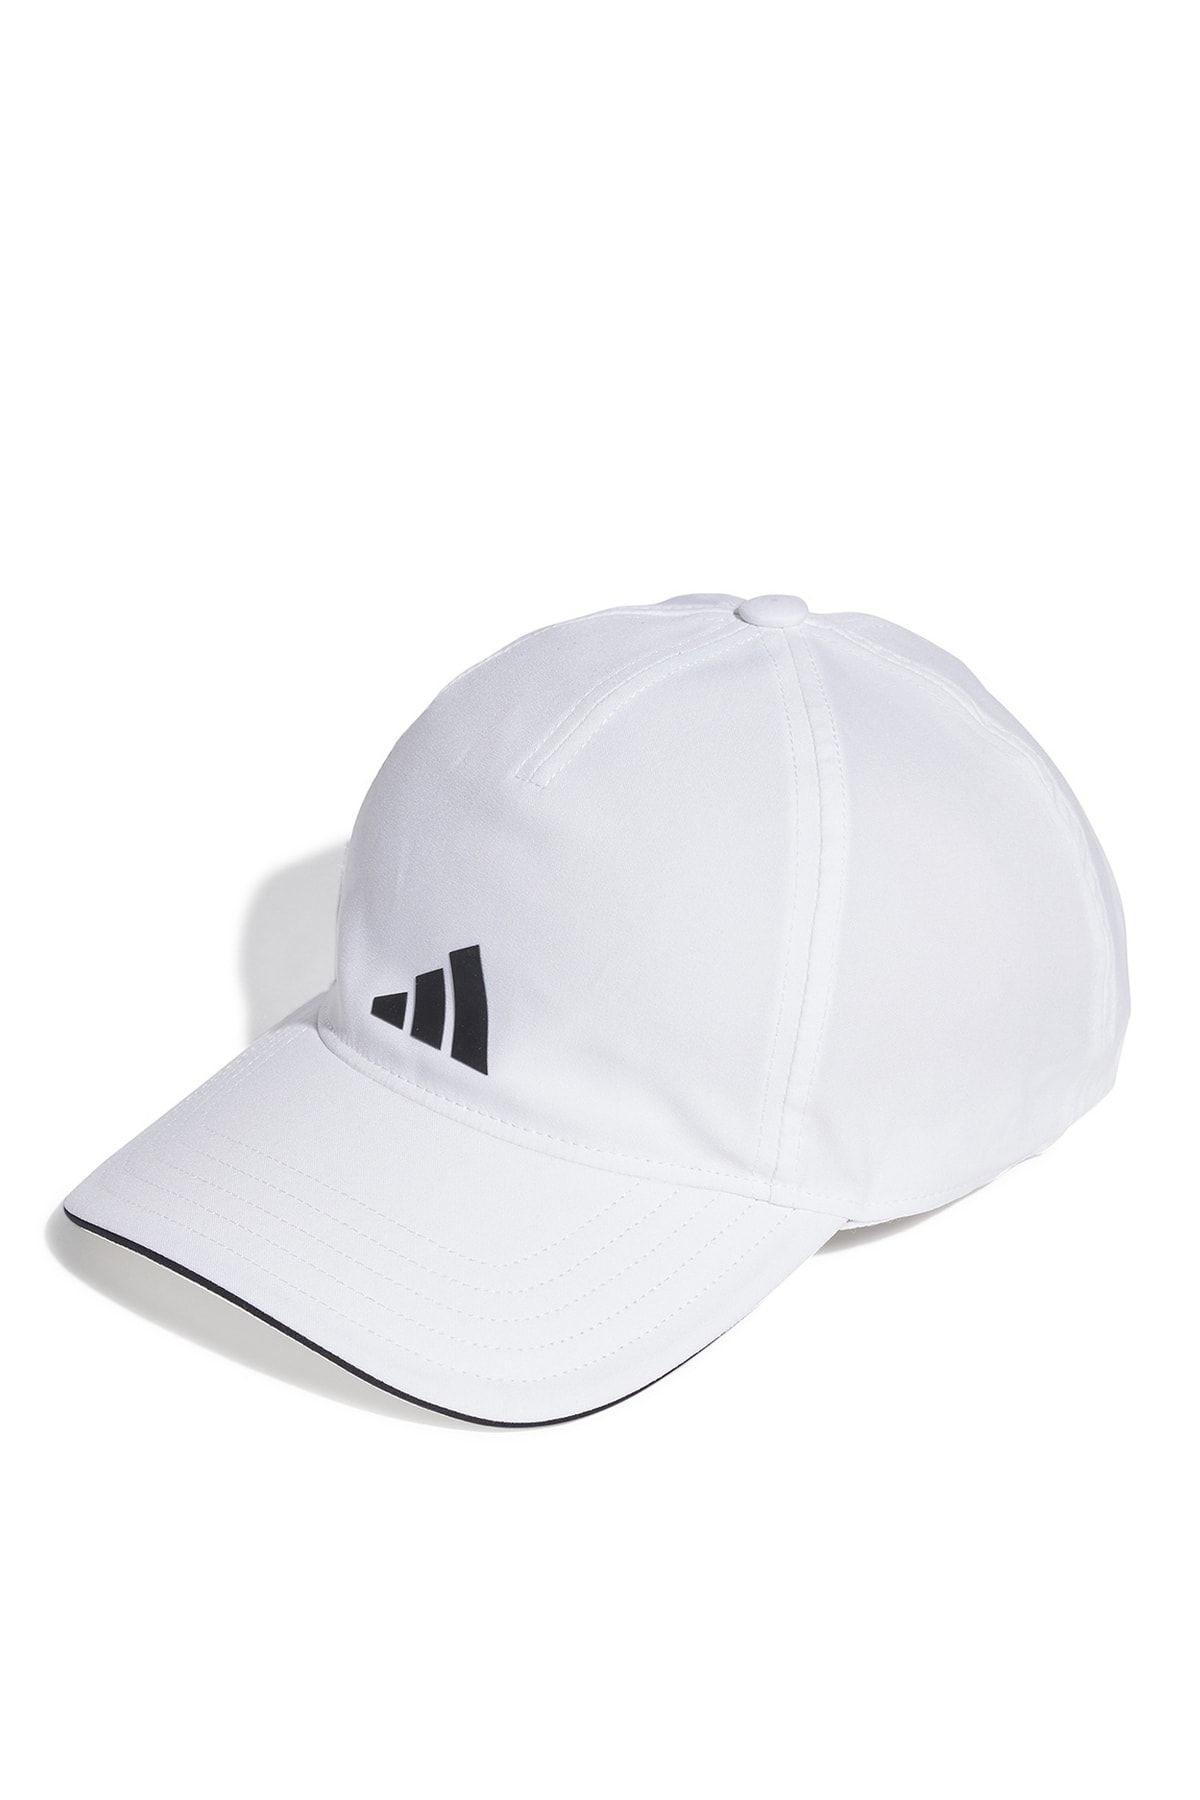 adidas Beyaz - Siyah Unisex Şapka Ht2031 Bball Cap A.r.